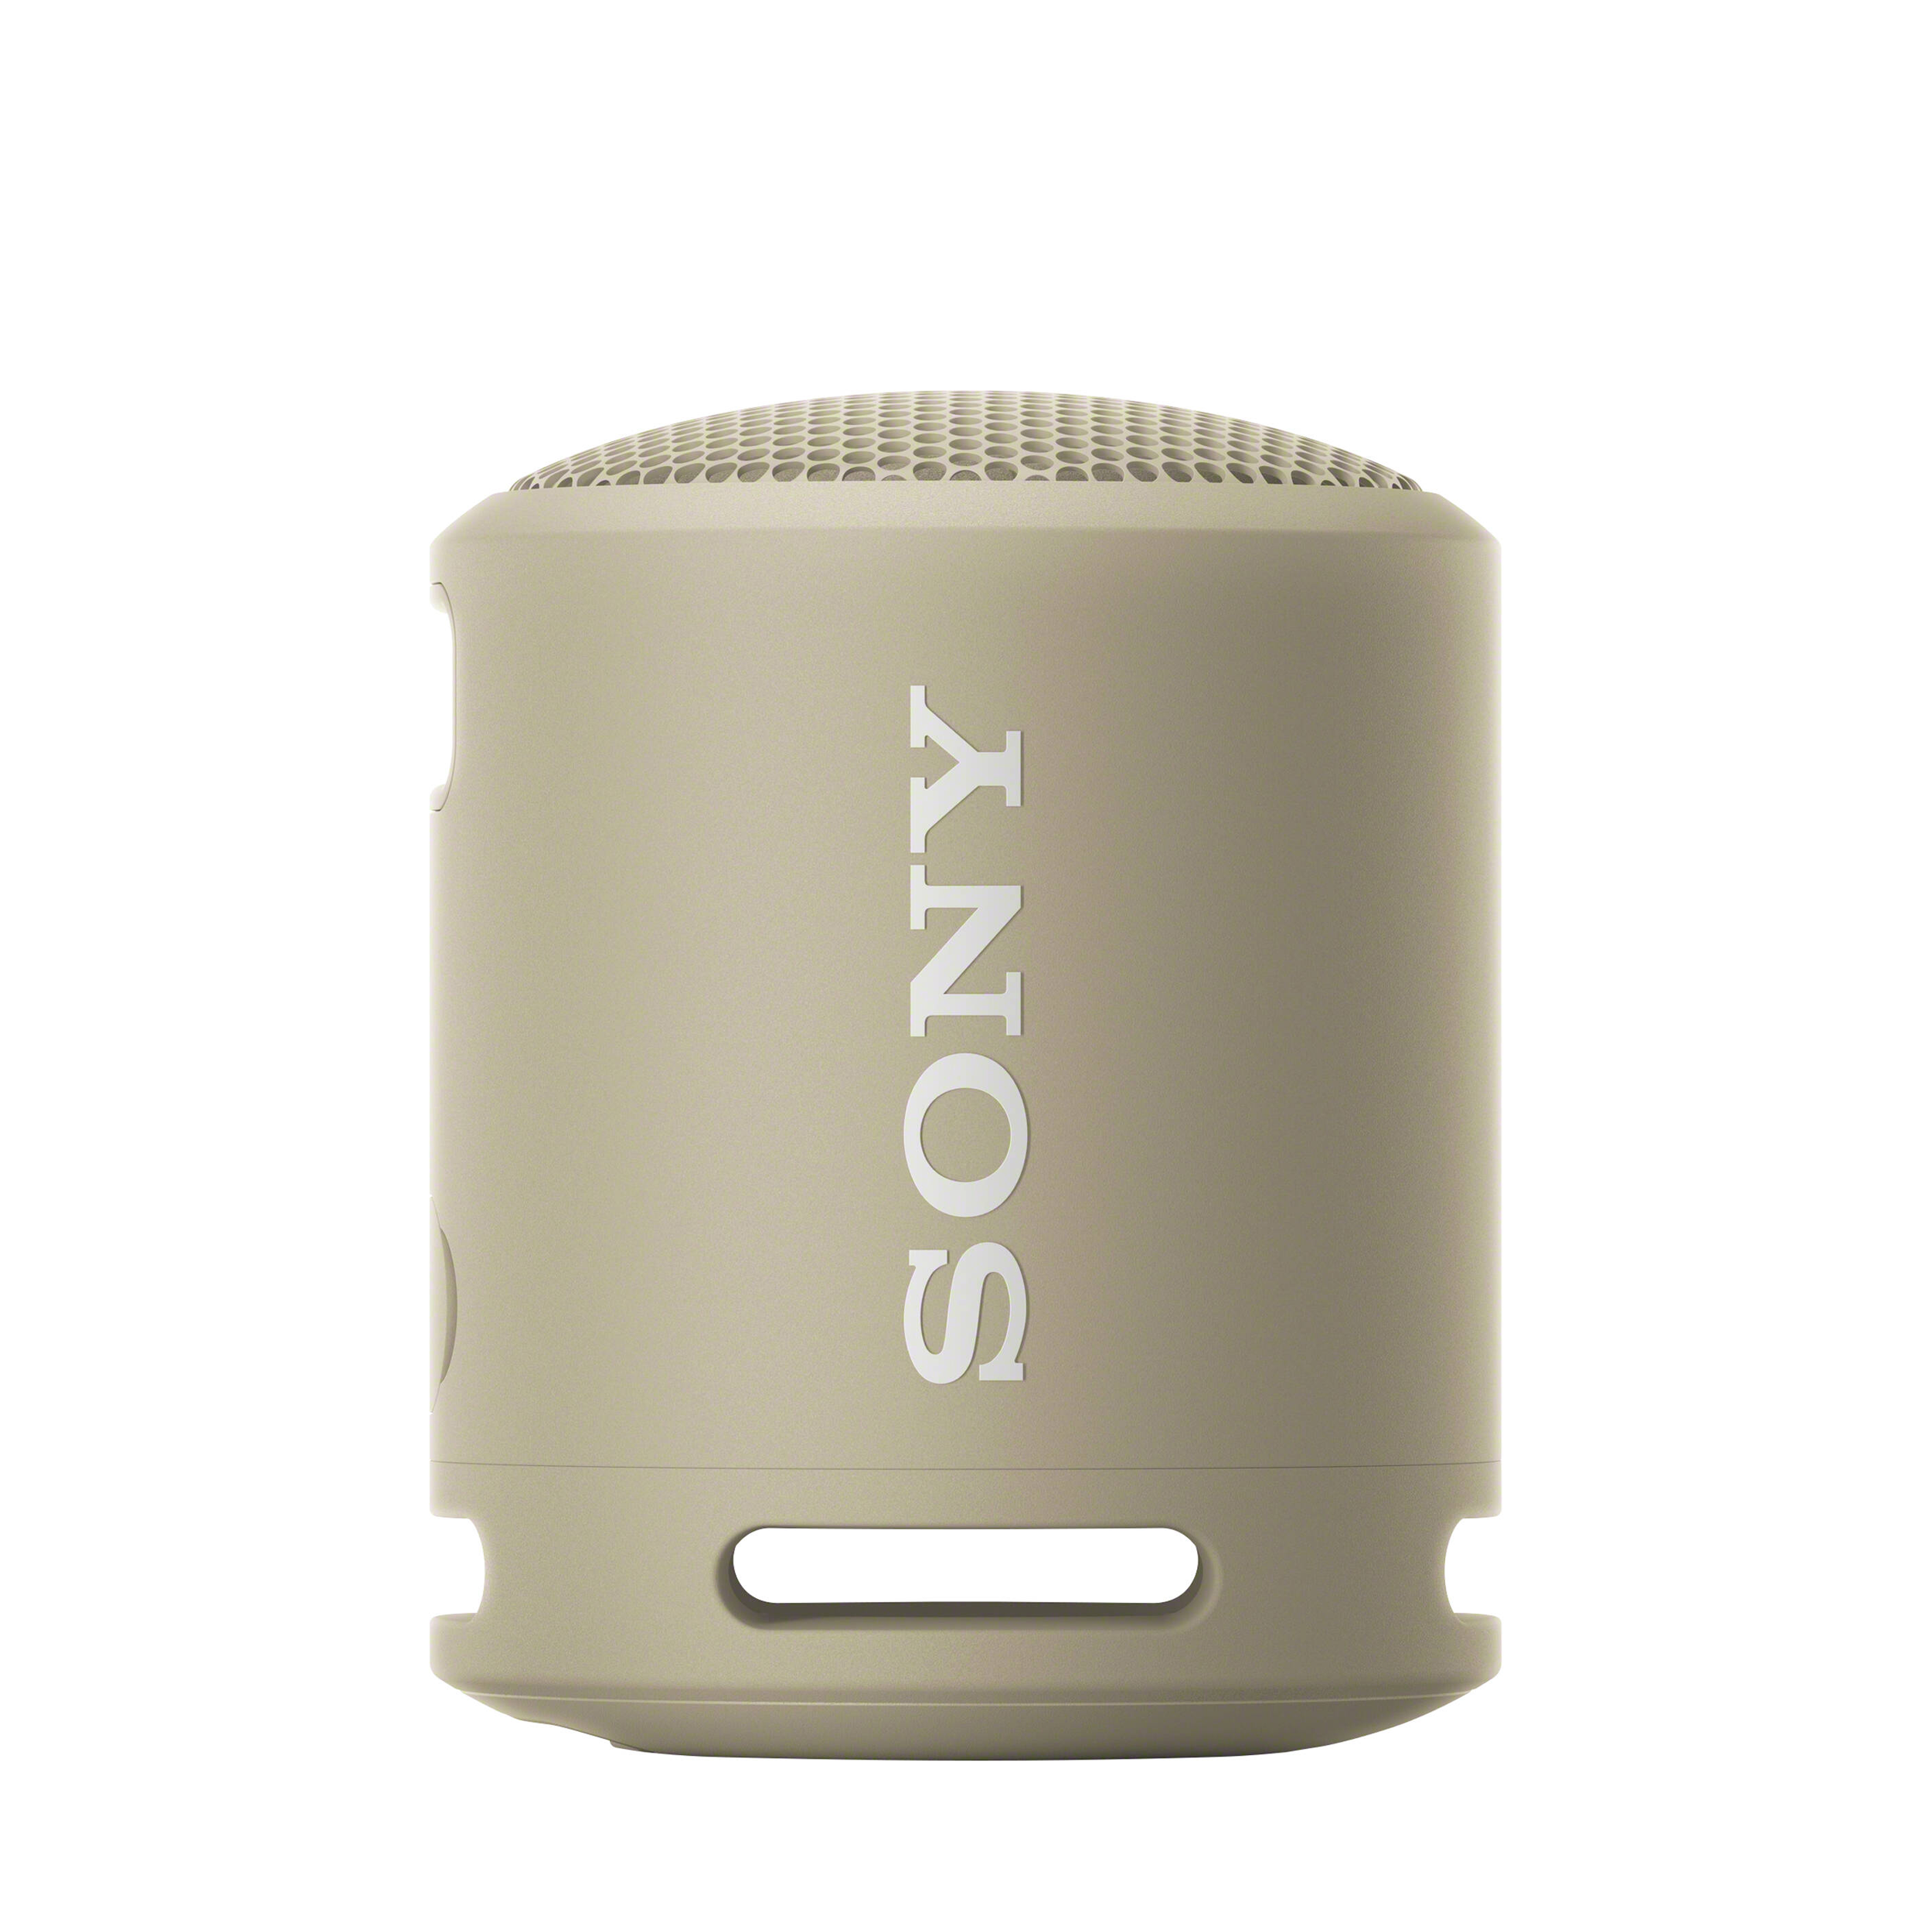 Sony XB13 EXTRA BASS Portable Wireless Speaker